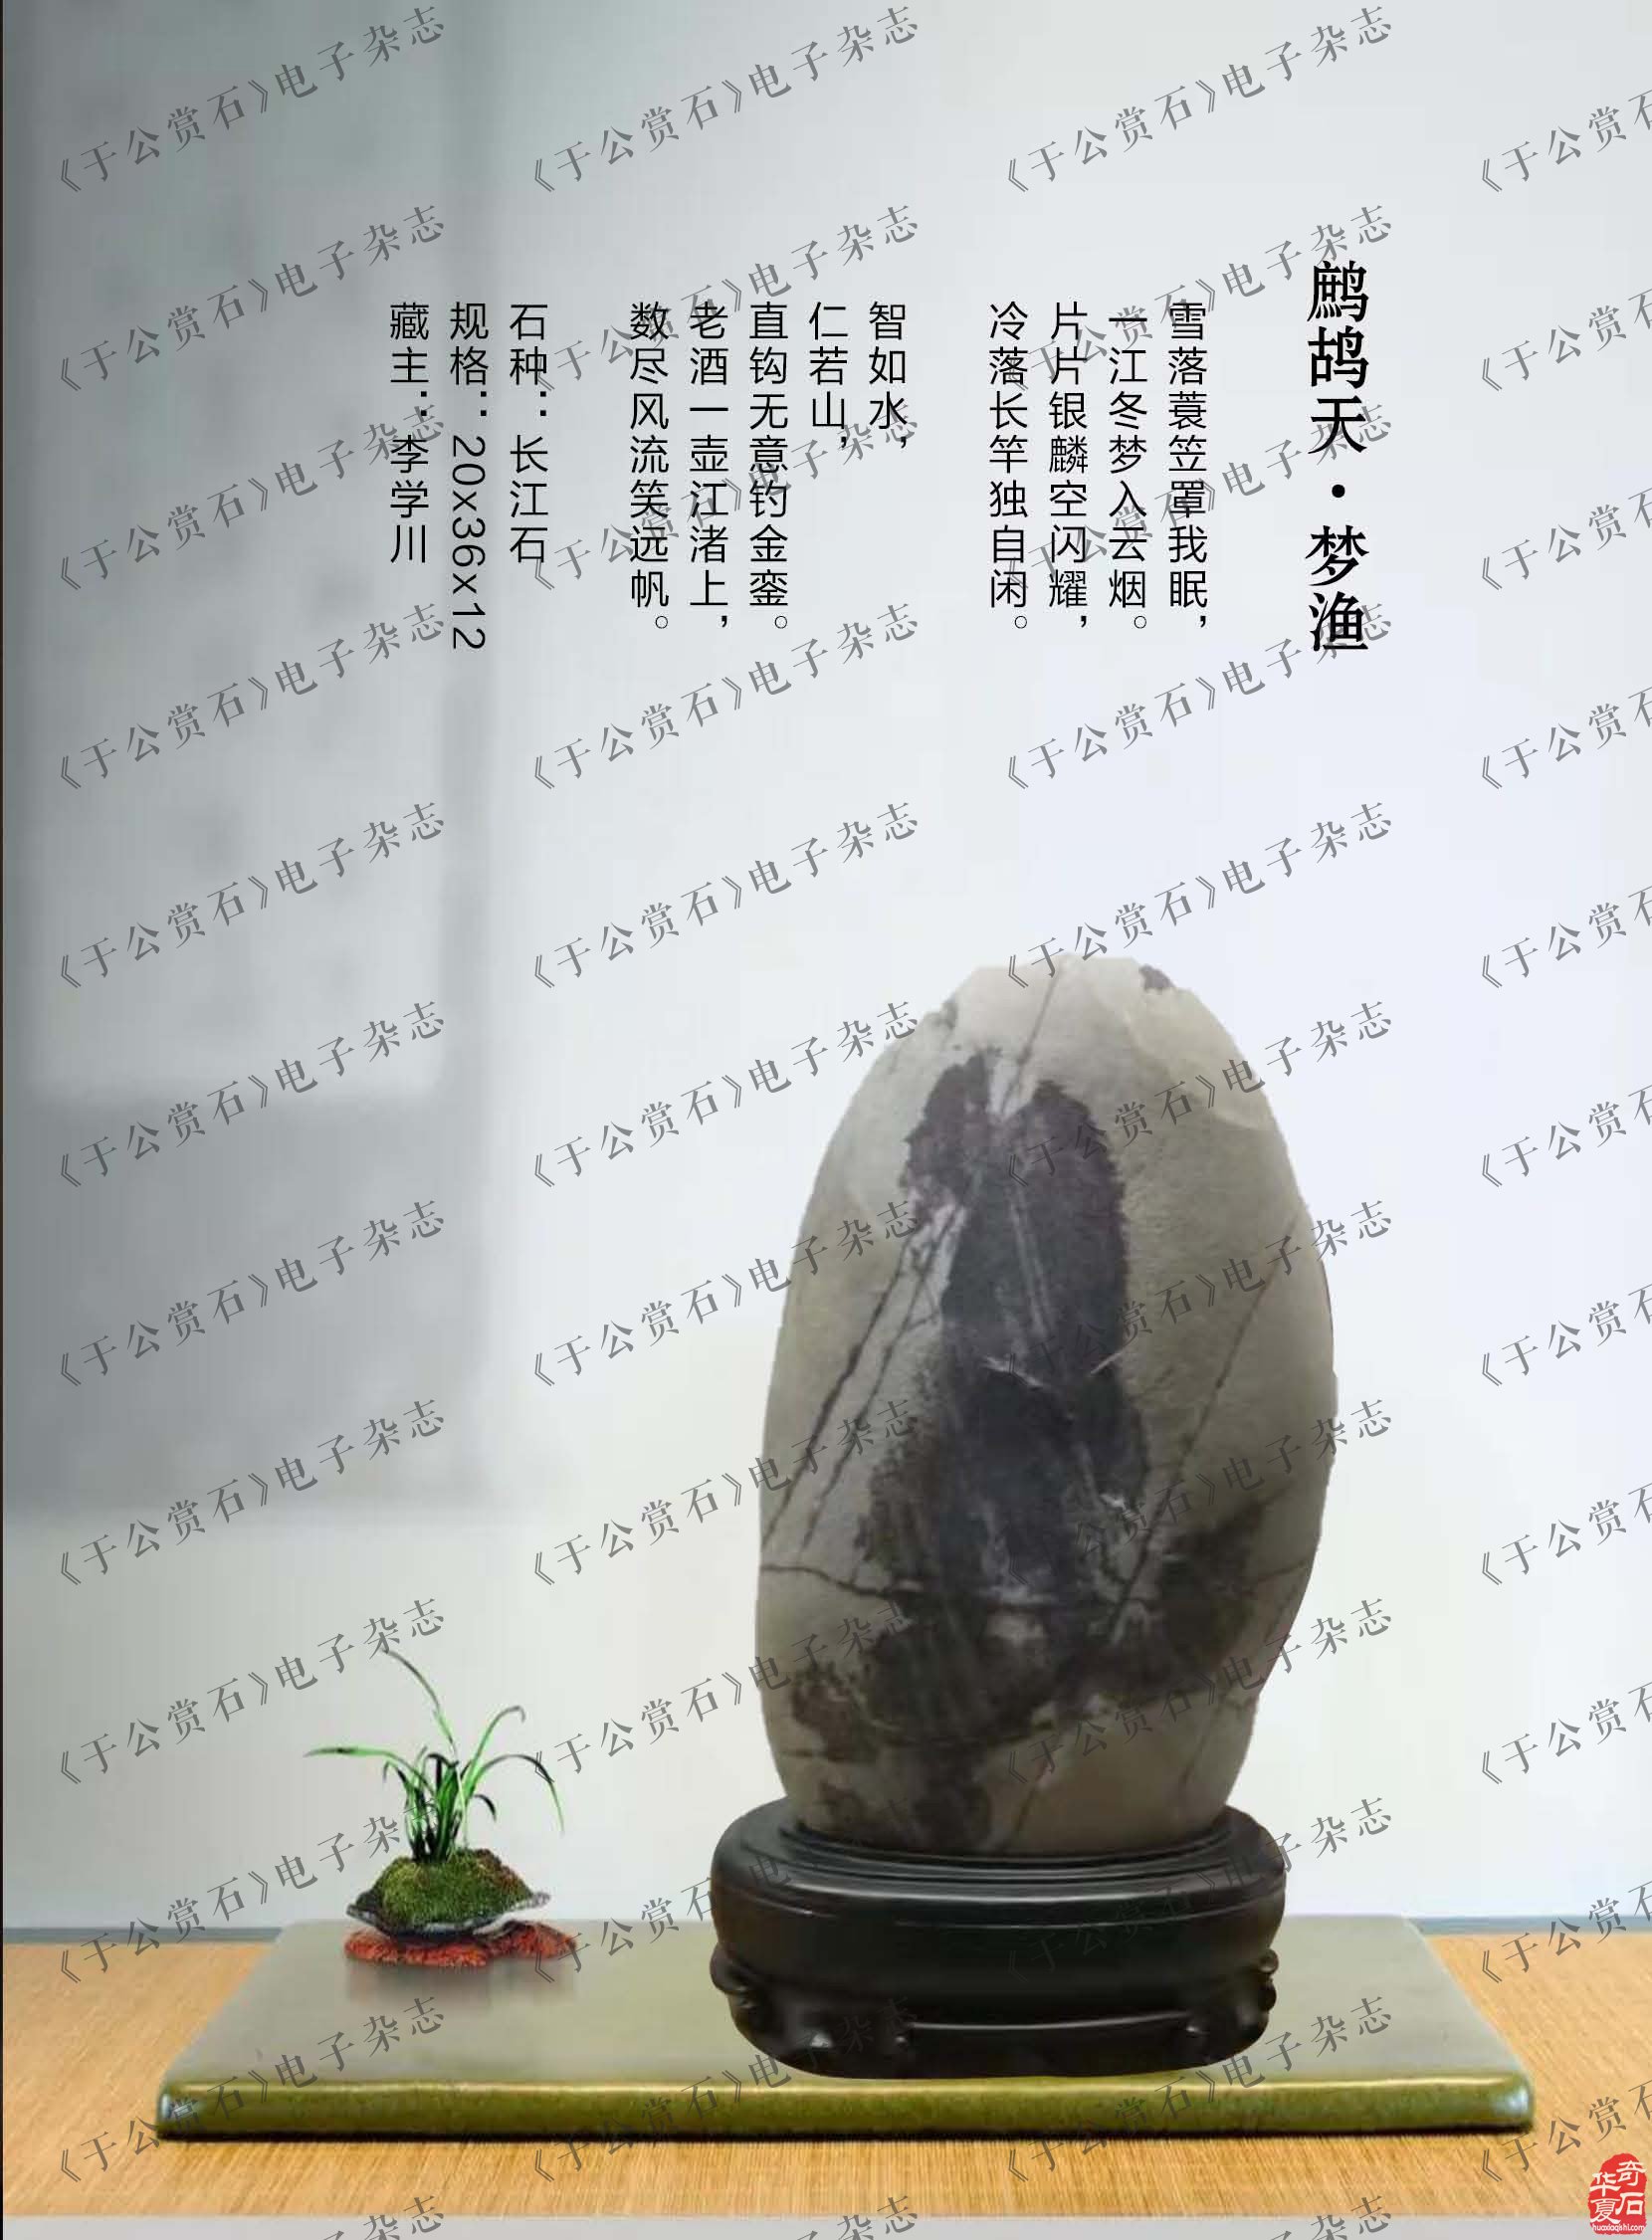 《于公赏石》刊发的企业家汤辉藏石欣赏